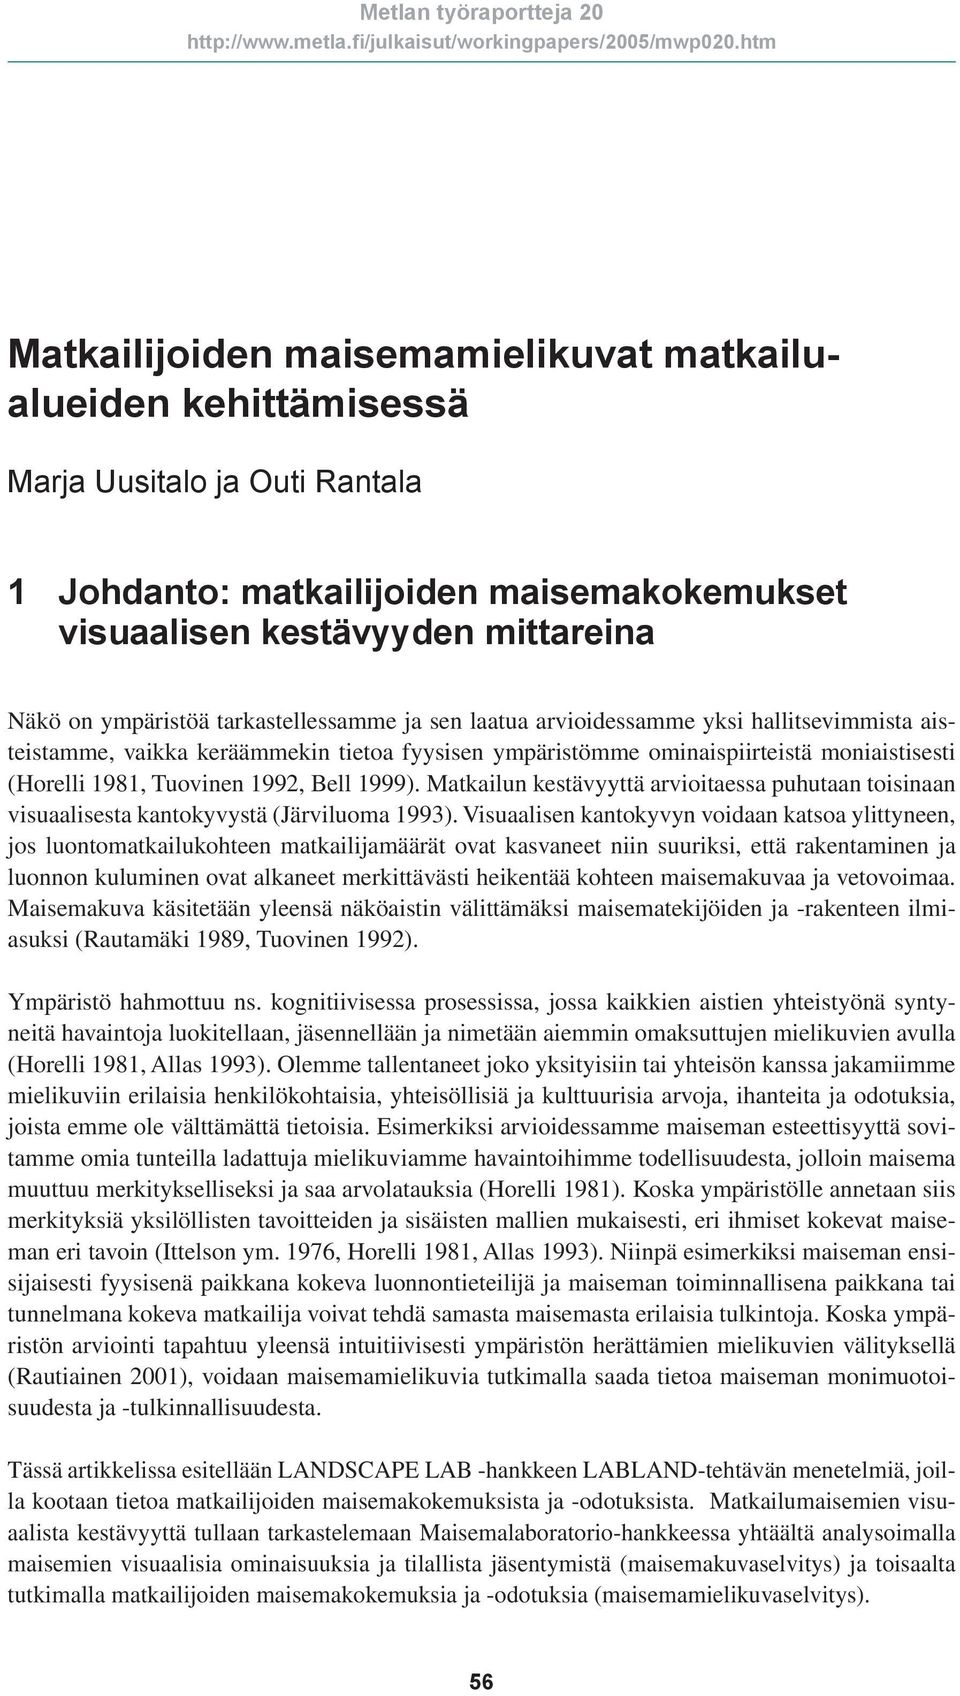 1999). Matkailun kestävyyttä arvioitaessa puhutaan toisinaan visuaalisesta kantokyvystä (Järviluoma 1993).